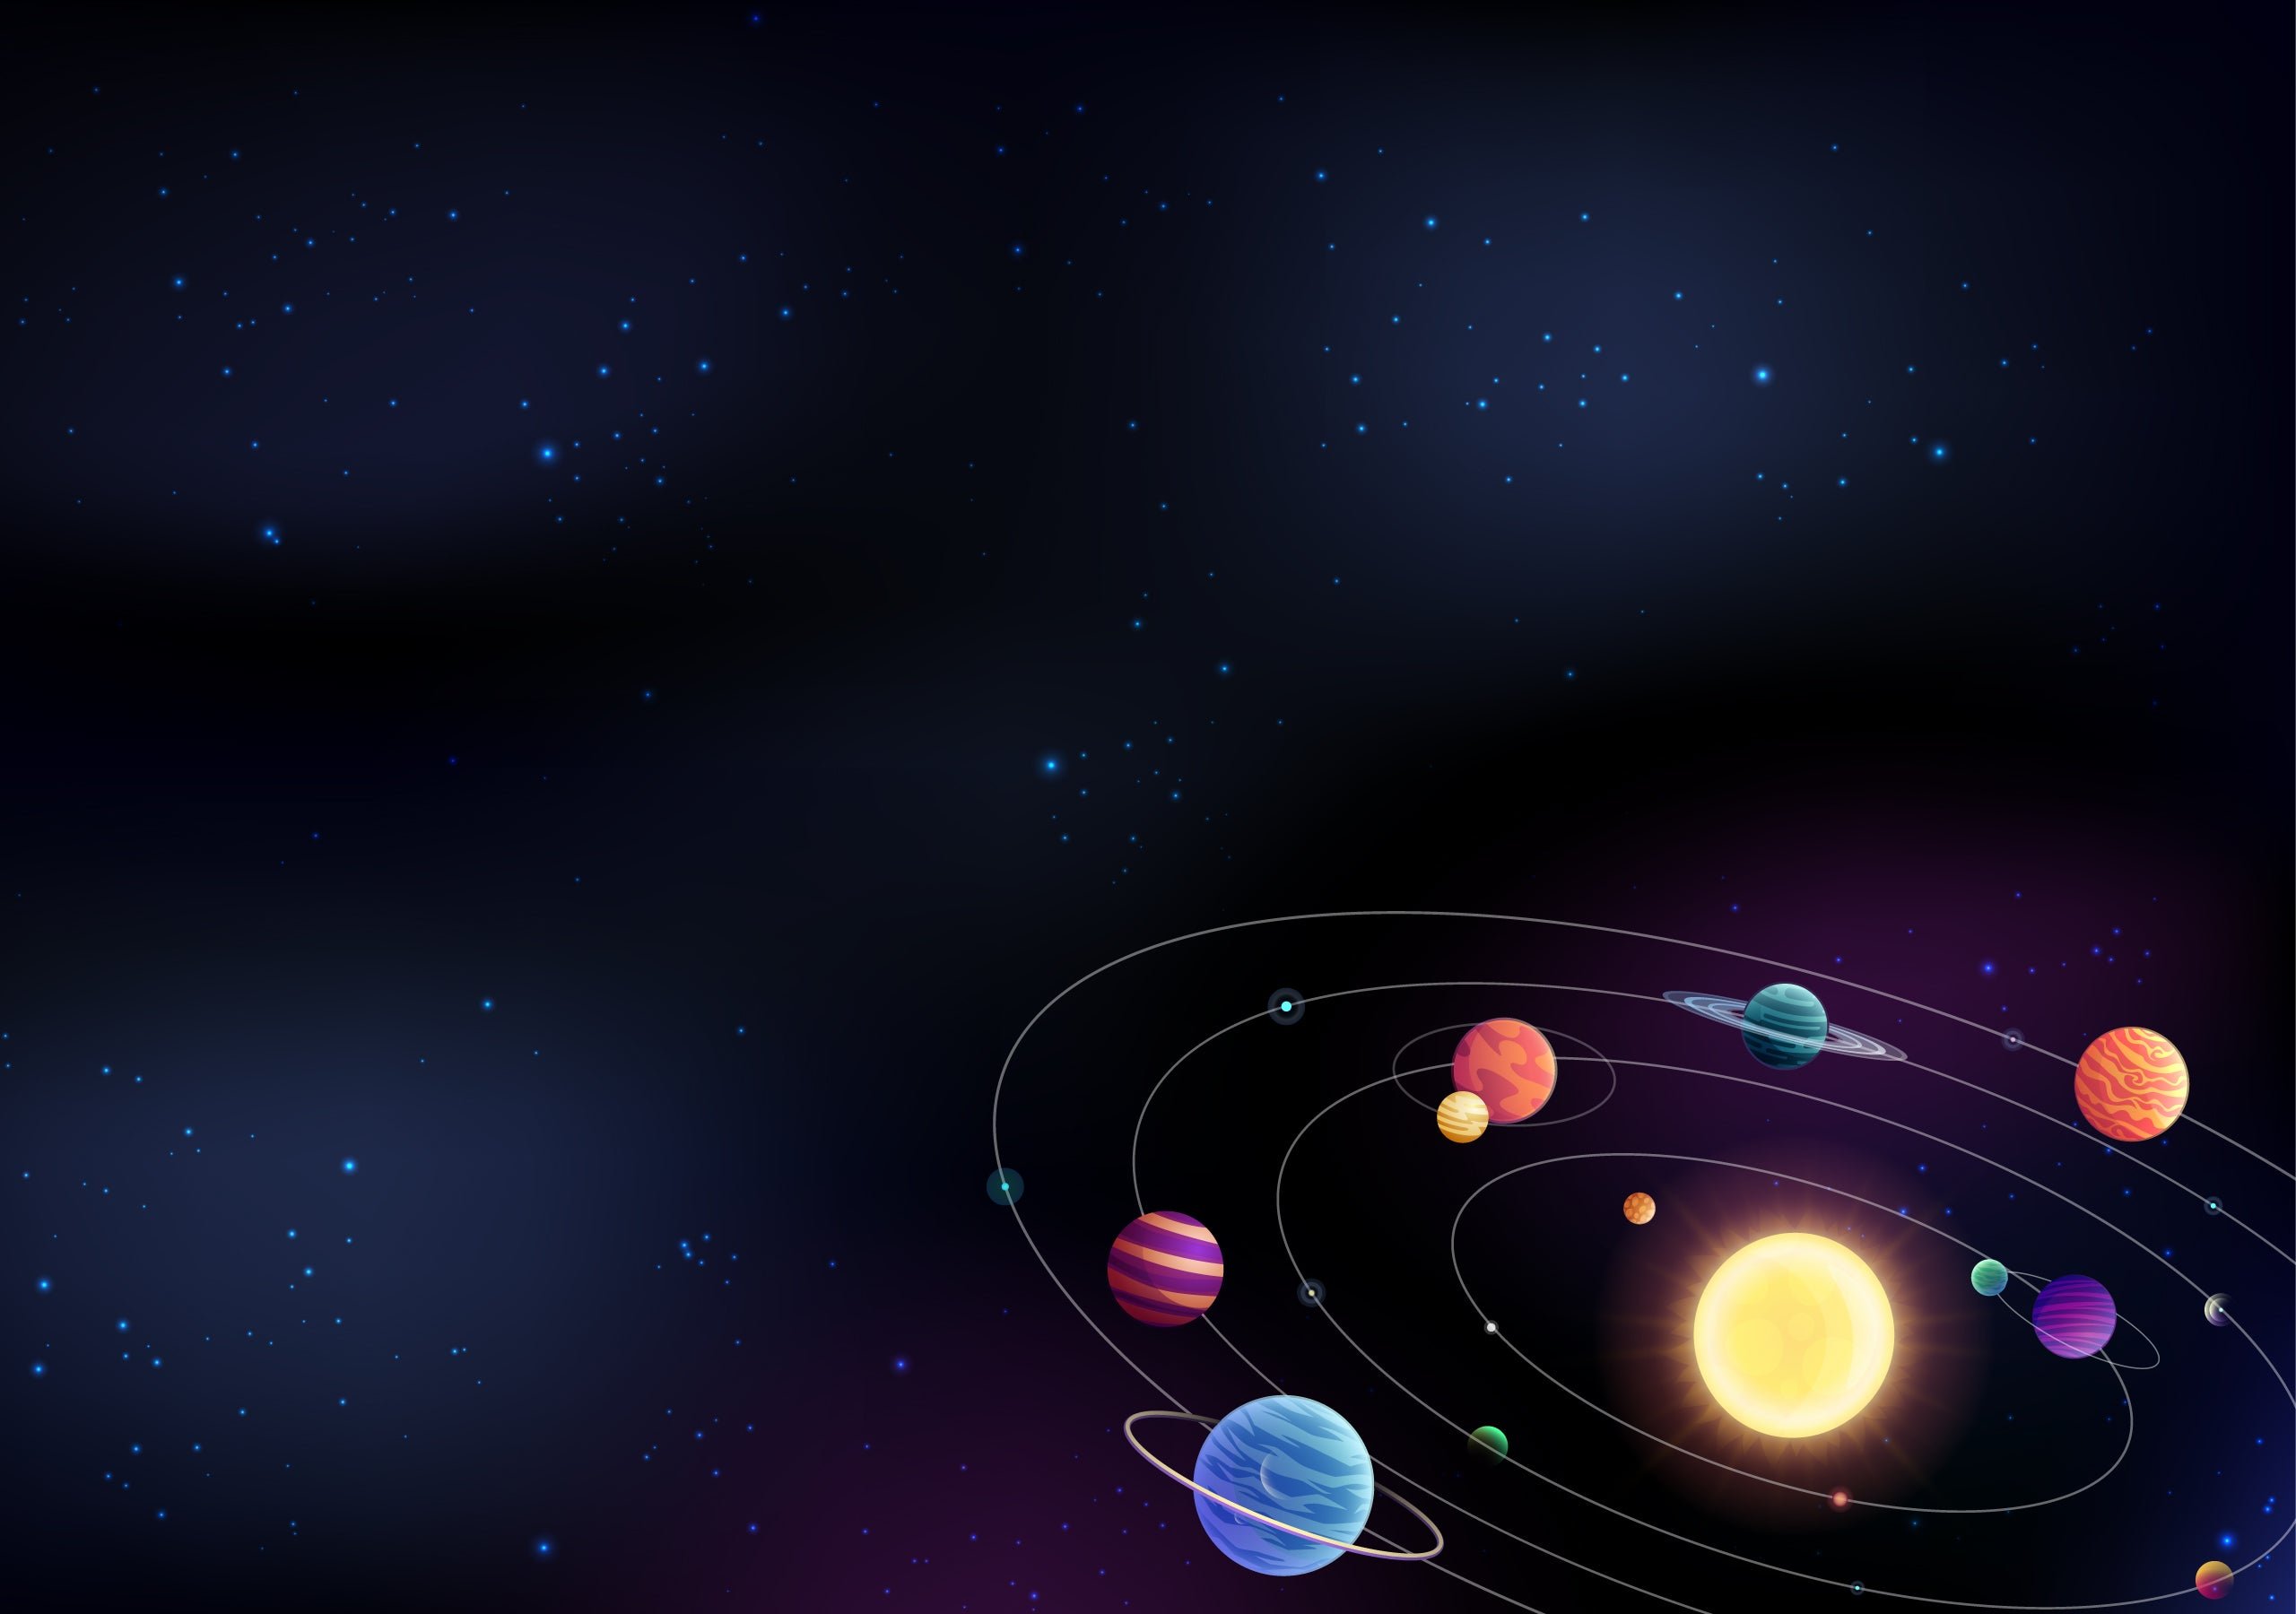 نقاشی دیجیتالی منظومه شمسی با تمامی مدار و قمر ها